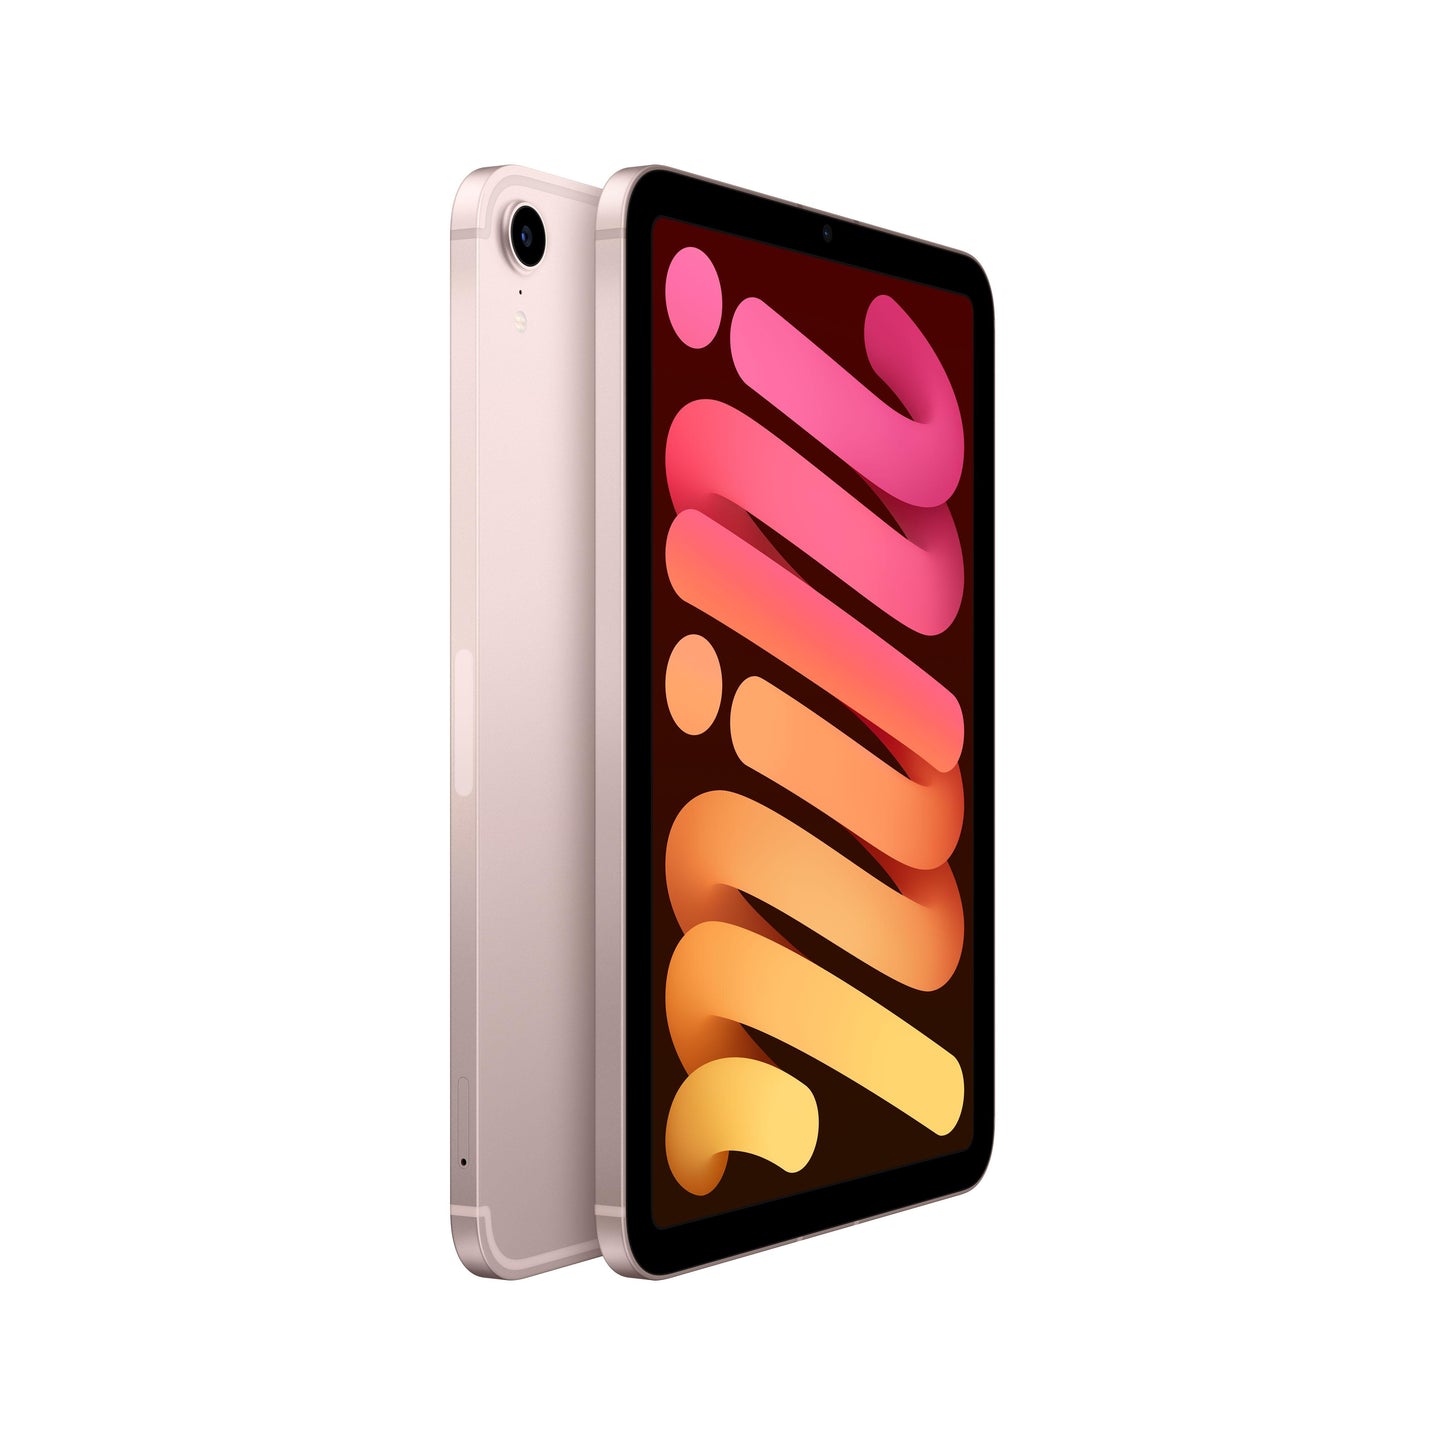 2021 iPad mini Wi-Fi 256GB - Pink (6th generation)